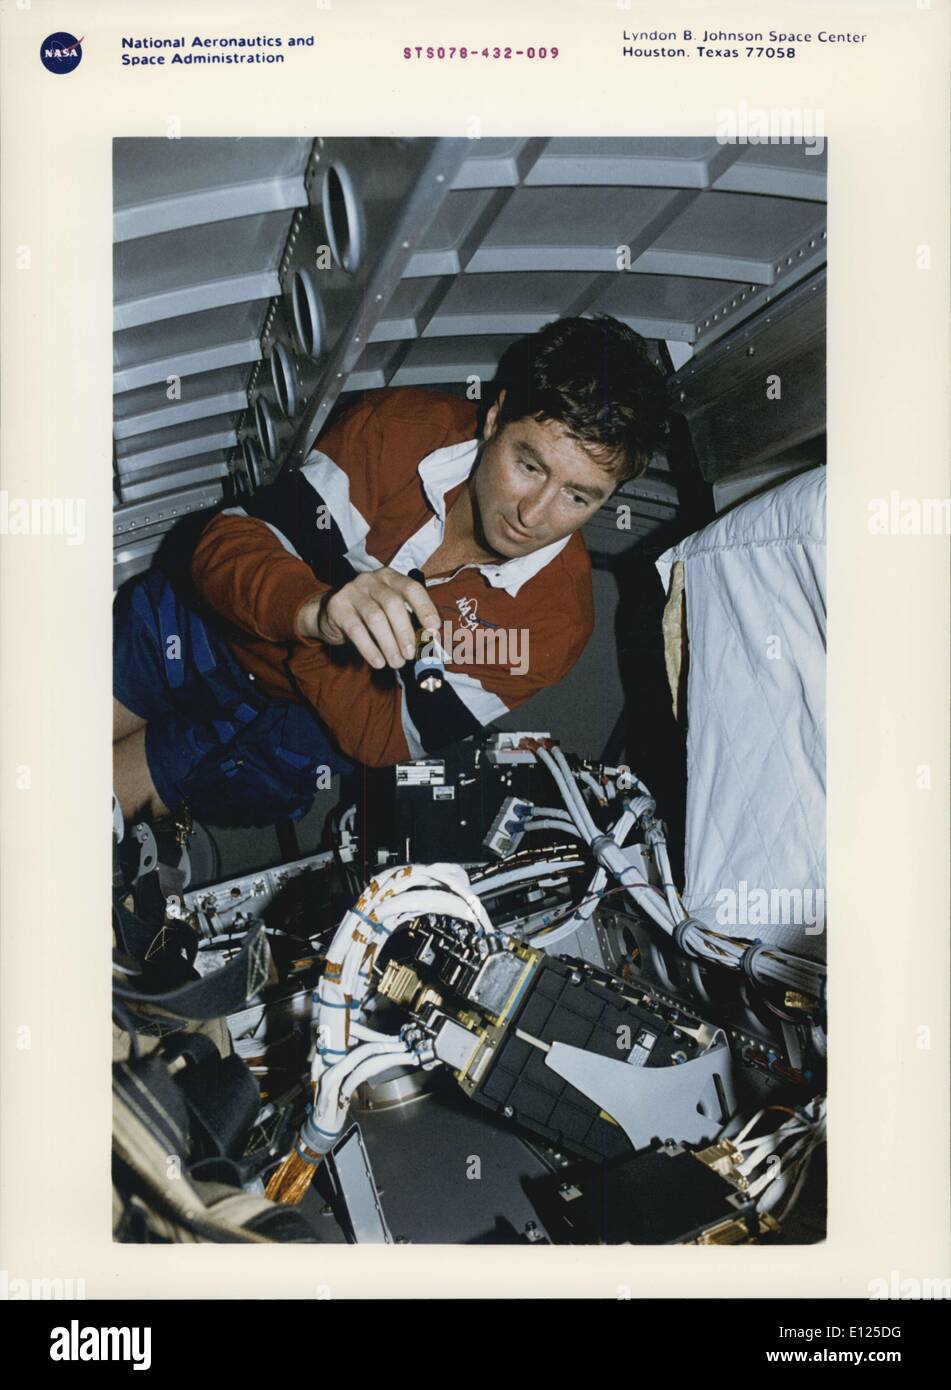 Giugno 20, 1996 - Johnson Space Center Houston, Texas: STS-78 vista di bordo - tra gli interventi di manutenzione a bordo (IFM) mansioni che sono state gestite da membri di equipaggio durante il loro quasi 17 giorni nello spazio a bordo della navetta spaziale Columbia è stato uno che ha coinvolto andando nell'alloggiamento al di sotto del pavimento della vita e la microgravità Spacelab (LMS-1) Scienza modulo. Astronauta Terence T. (Tom) Henricks, comandante della missione, brilla una piccola torcia elettrica su alcuni cavi relativi alla LMS-1 supportati sistemi di computer. Come nel caso delle altre IFM faccende, Henricks' sforzi sono stati coronati da successo Foto Stock